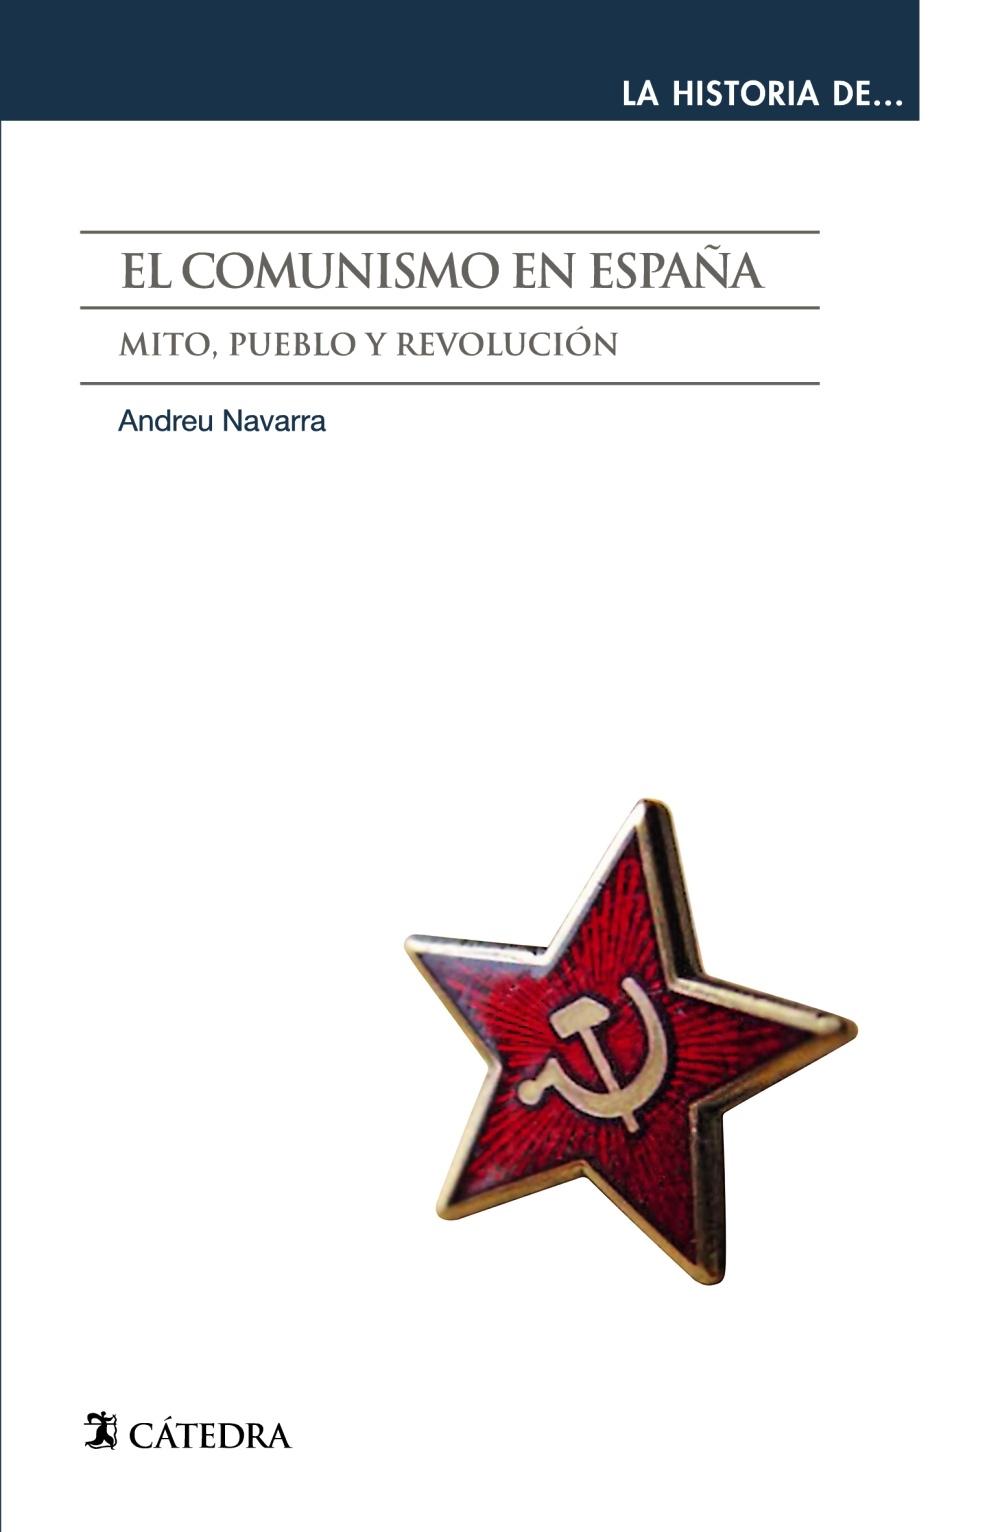 El Comunismo en España "Mito, Pueblo y Revolución". 